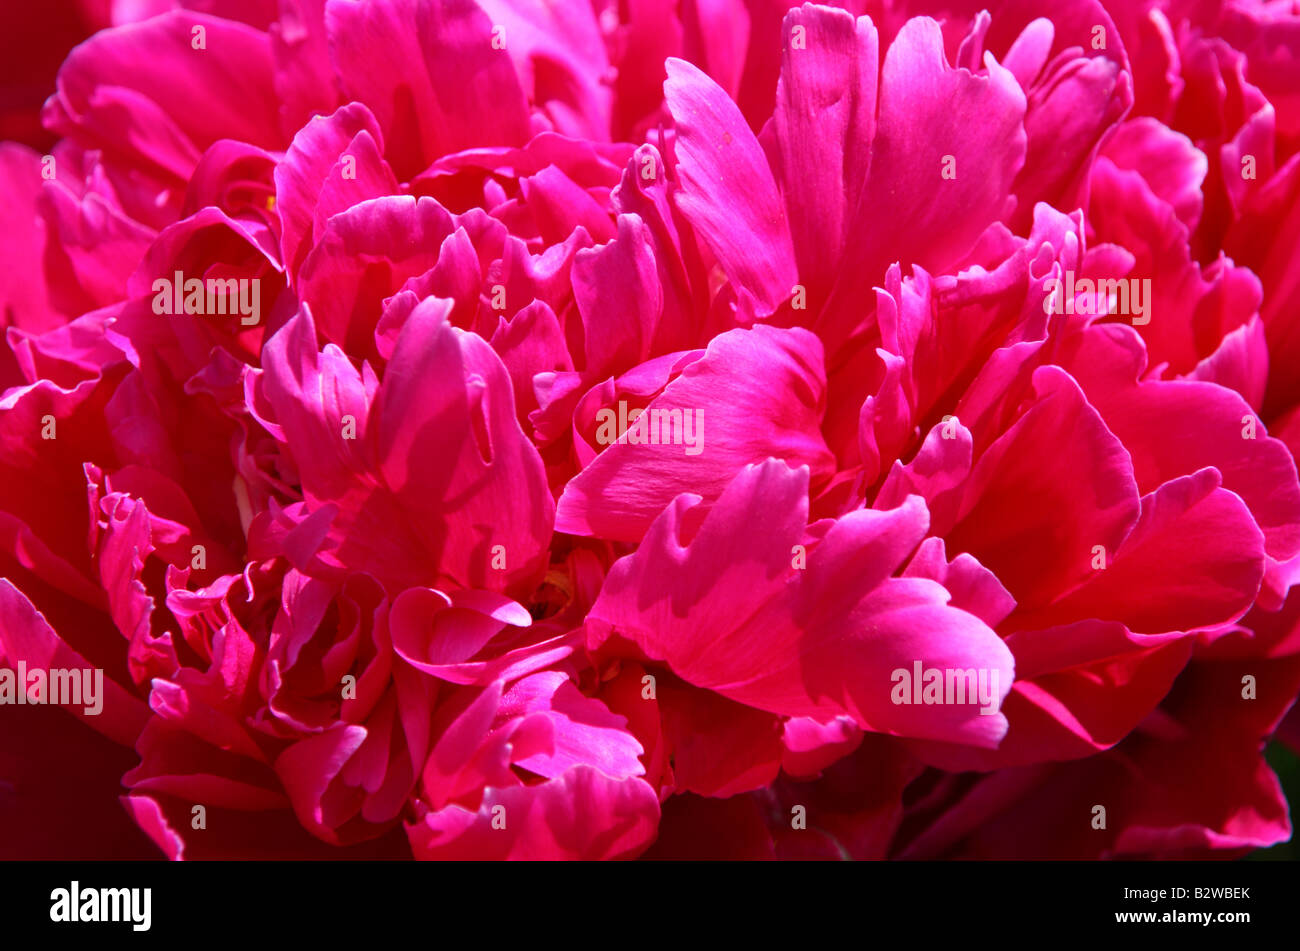 Closeup of peony petals Stock Photo